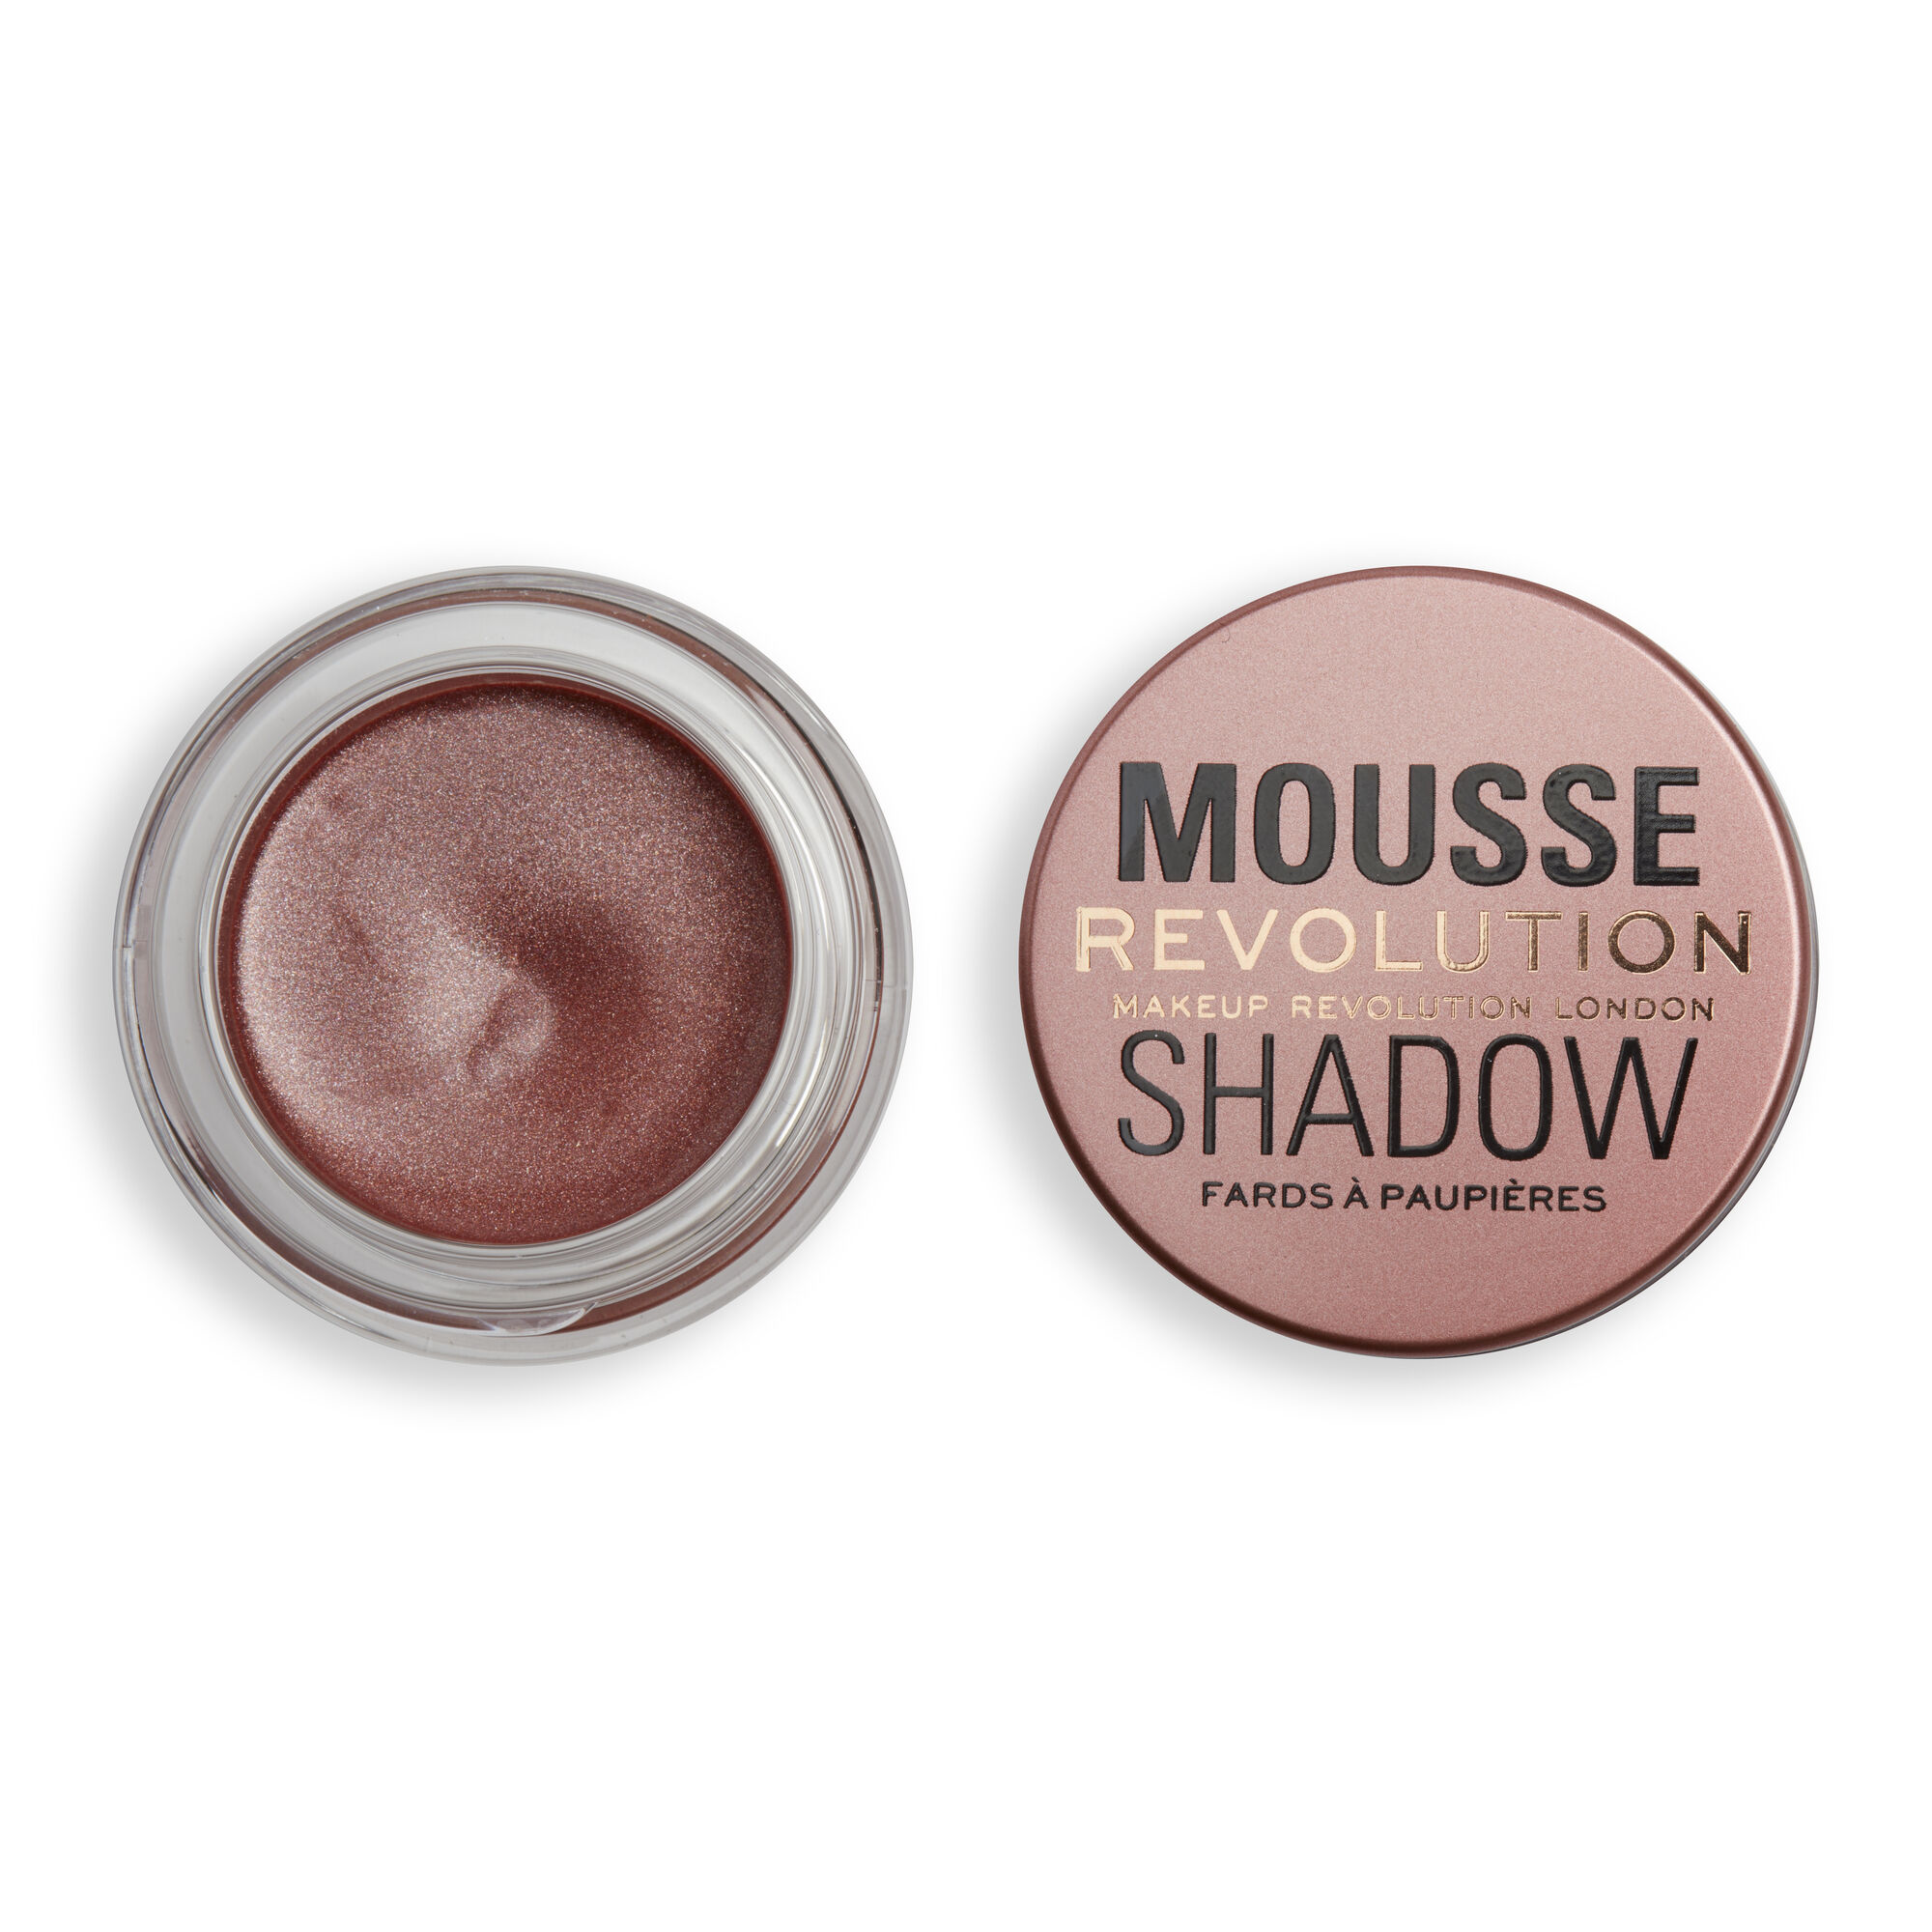 Тени кремовые Revolution Makeup для век Mousse Cream Eyeshadow Amber Bronze lasting mousse eyeshadow стойкие муссовые тени для век